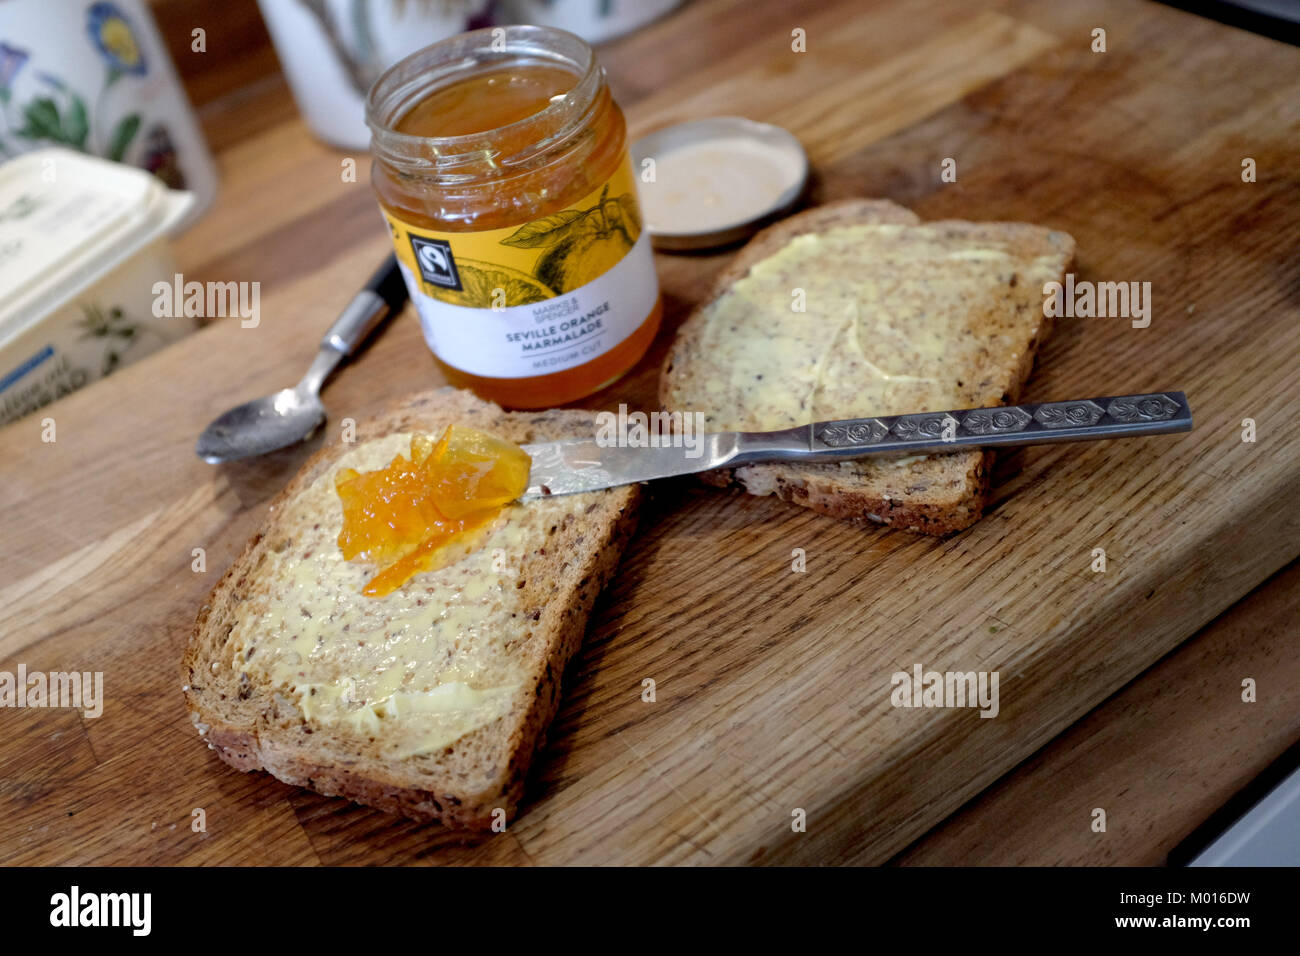 La farine complète brown toast avec M&S de marmelade d'Orange de Séville Banque D'Images